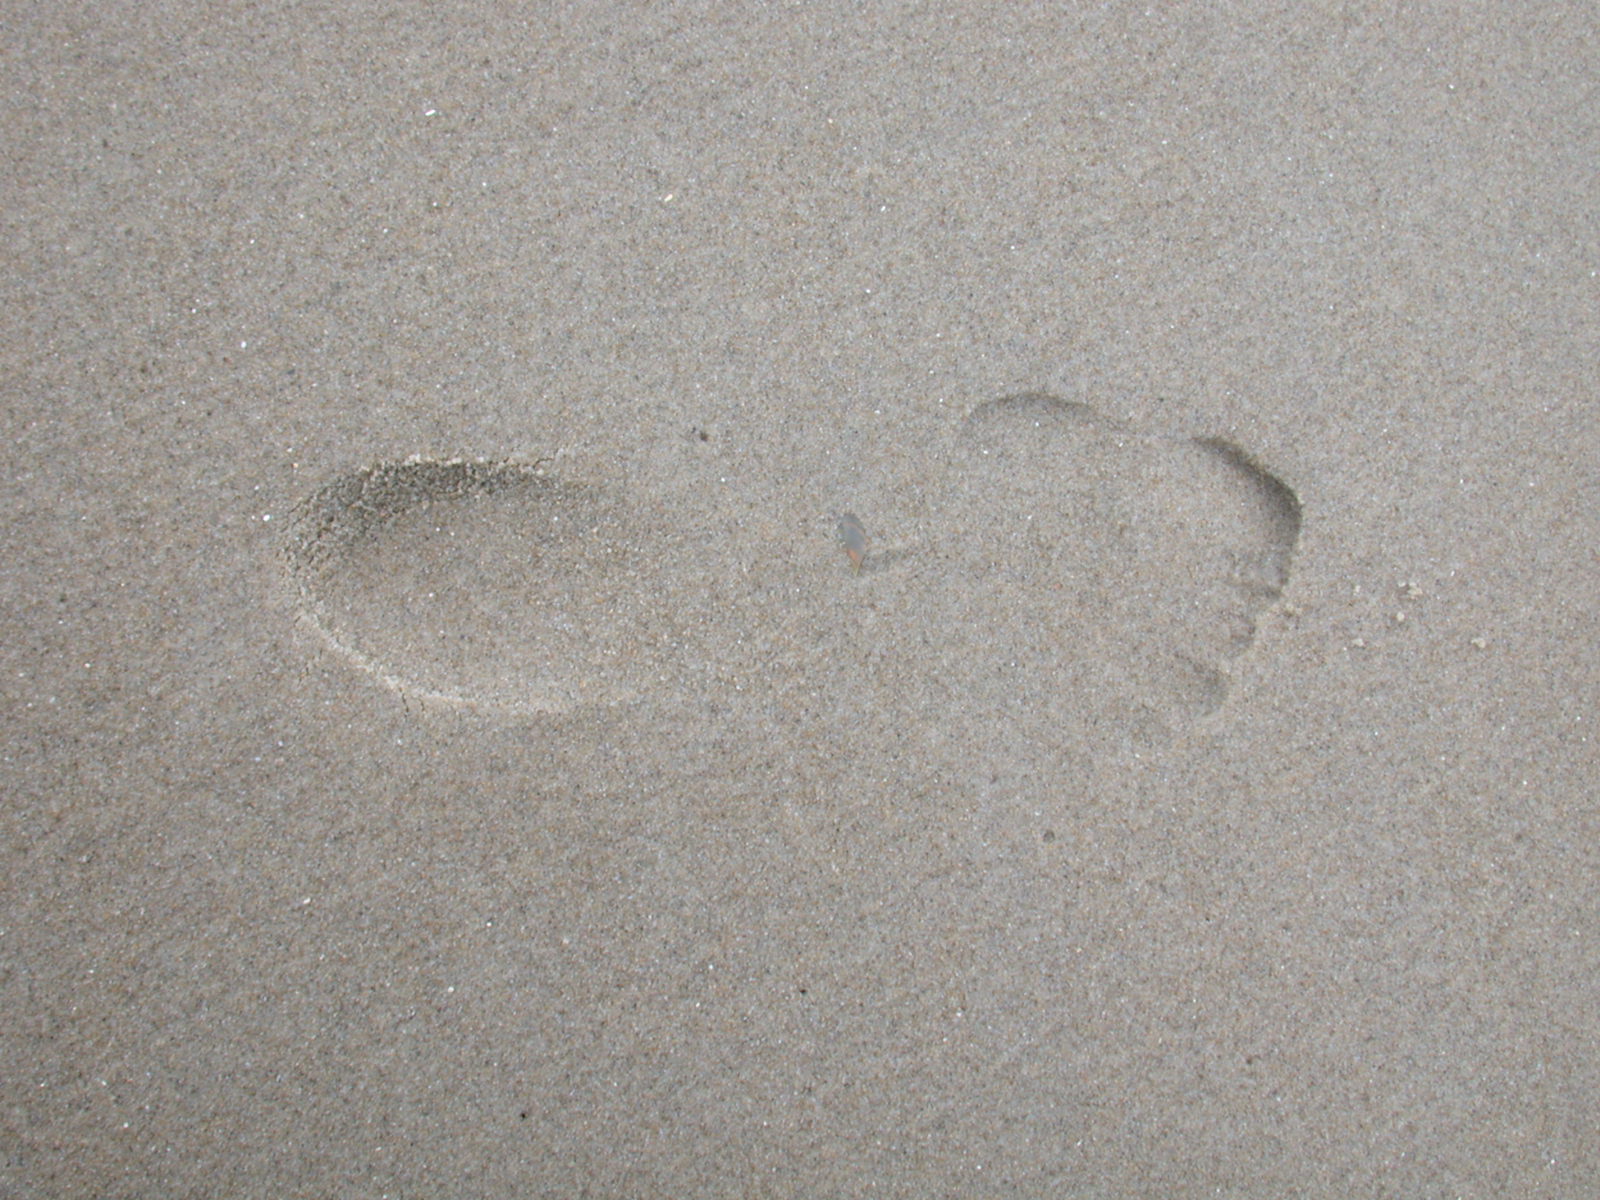 grounds sand footprint footstep foot barefoot textures beach